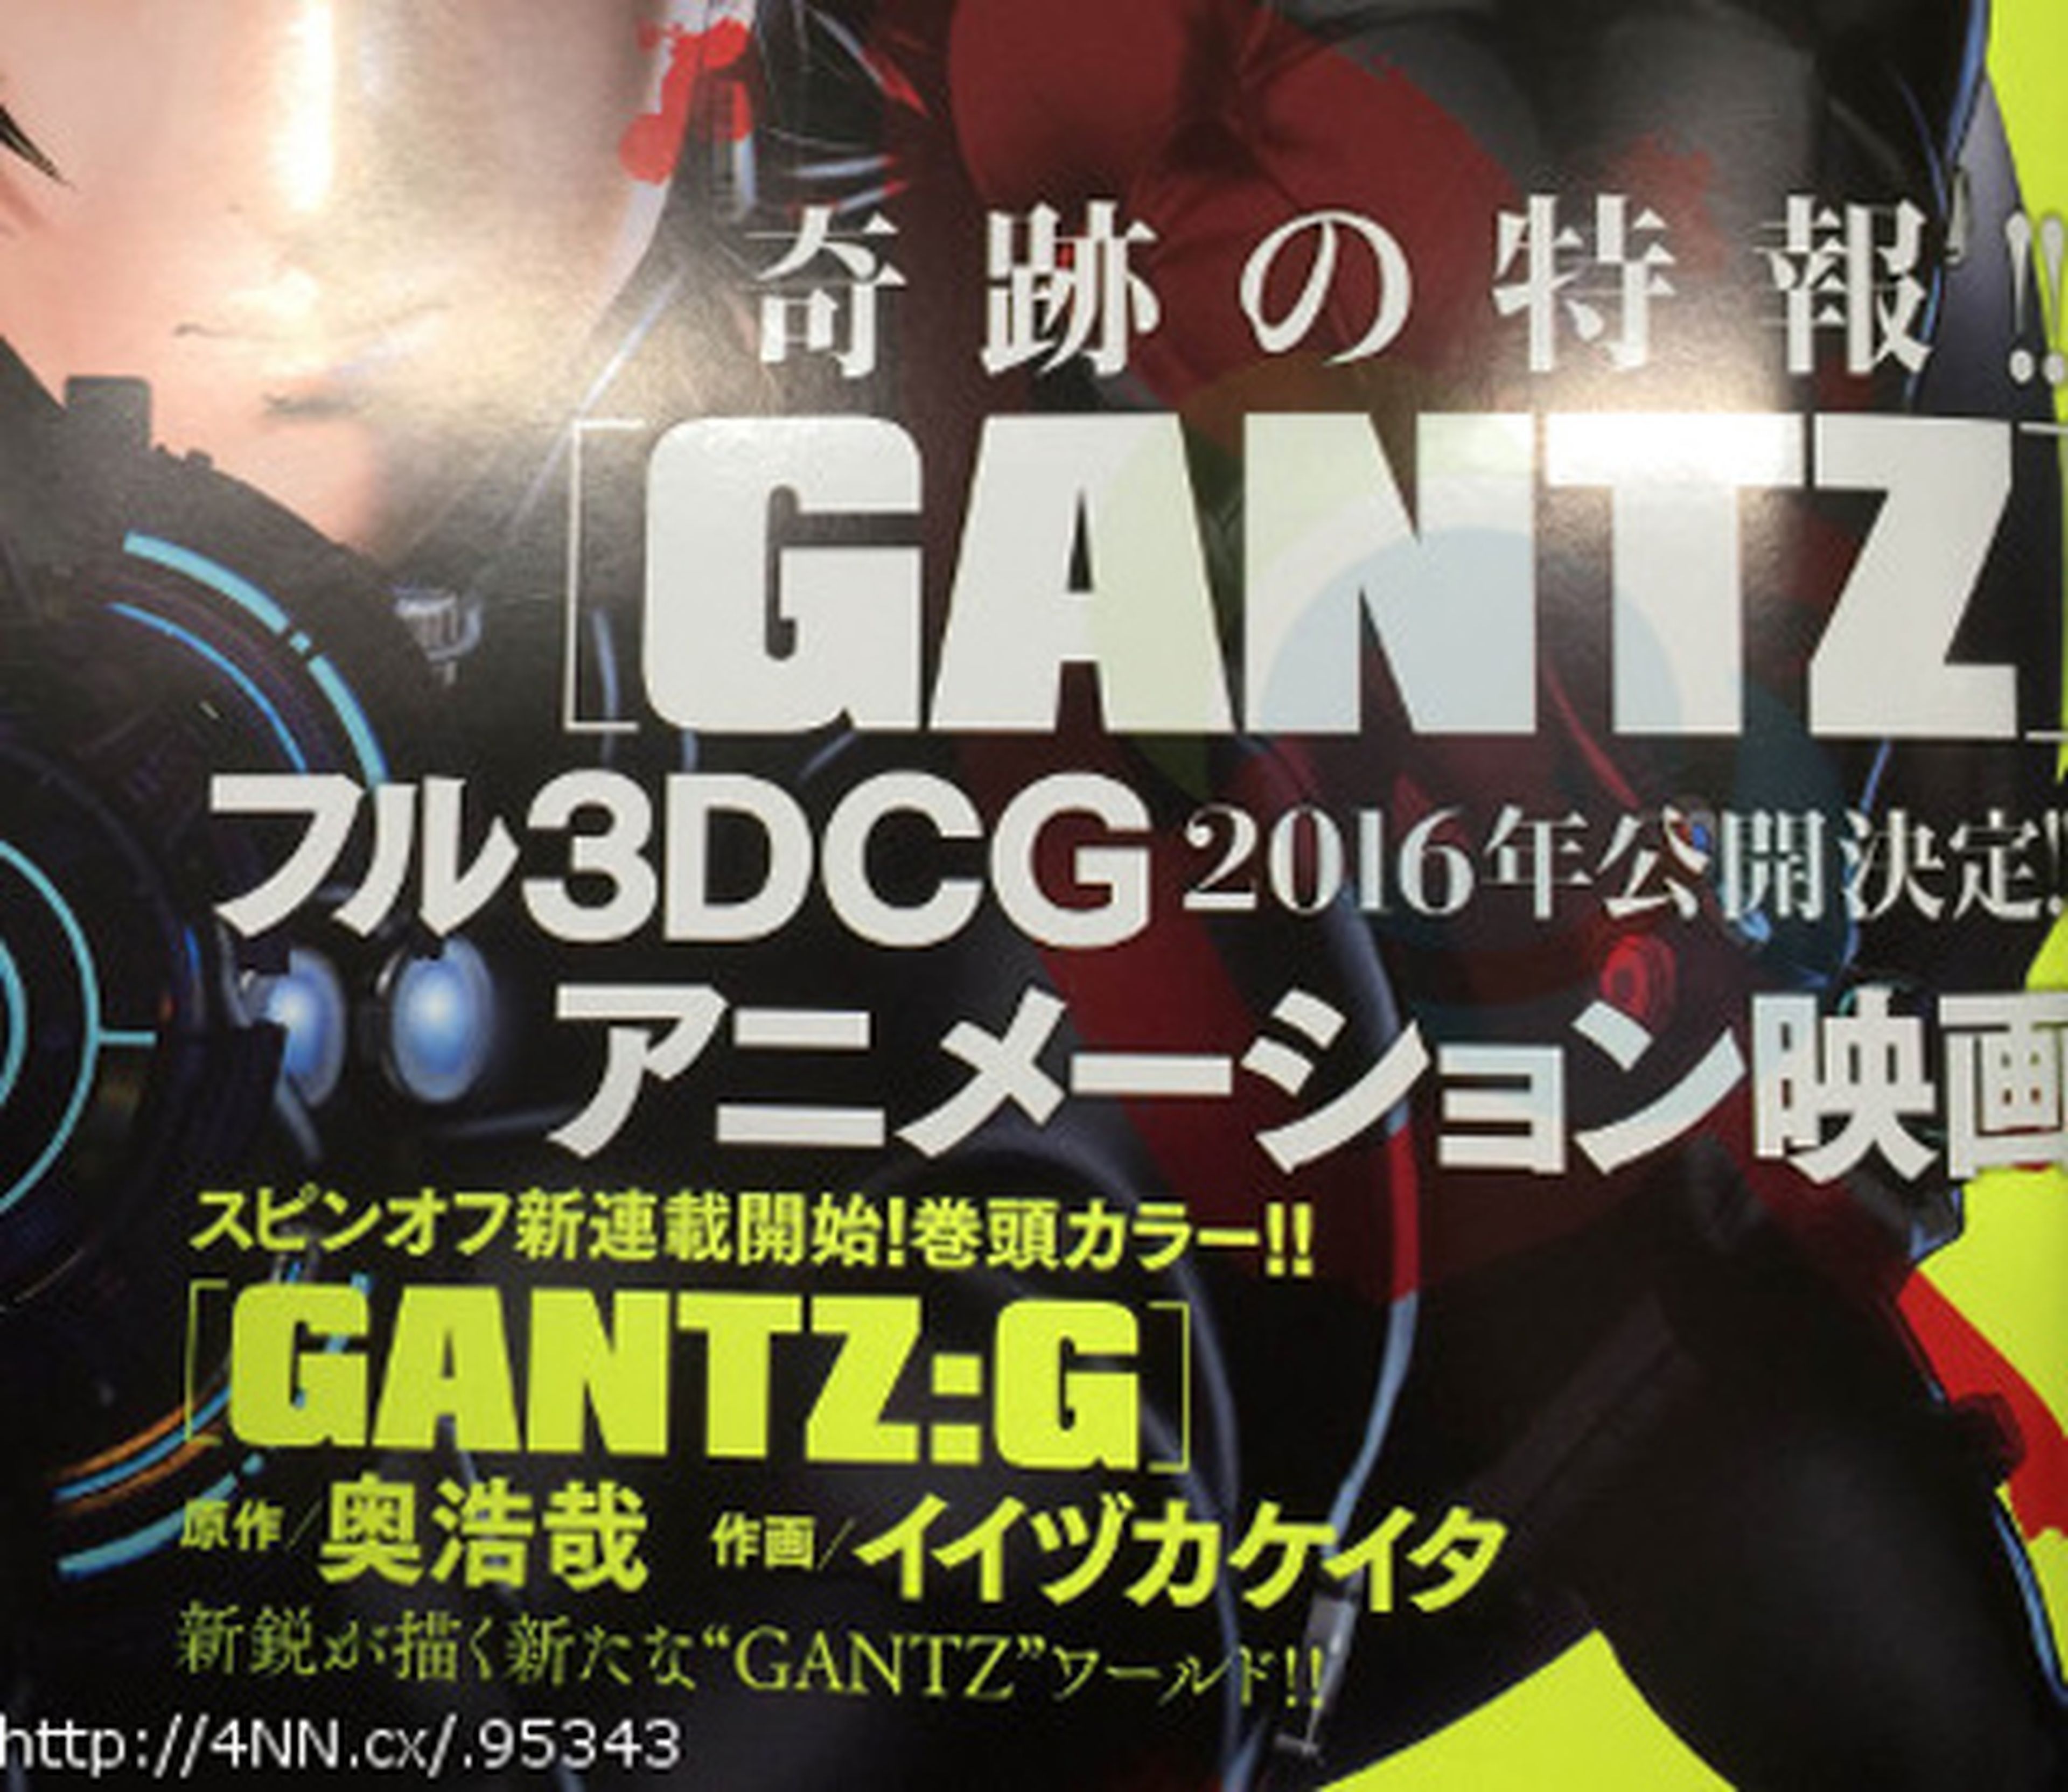 Gantz tendrá película en 3D el año que viene